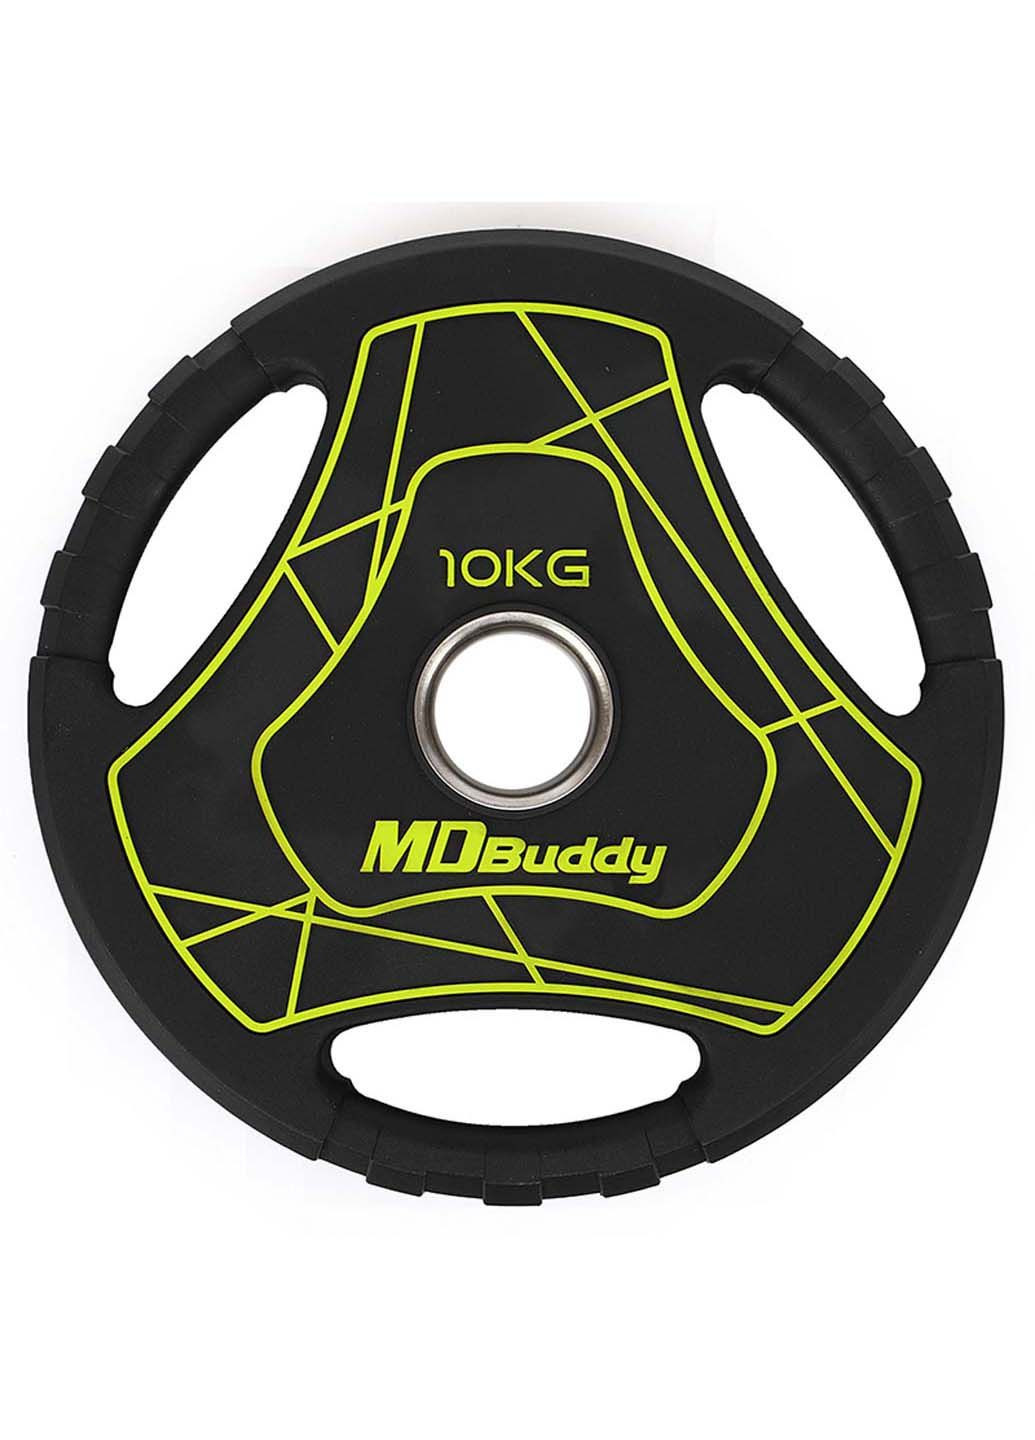 Млинці диски TA-9647 10 кг MDbuddy (286043837)